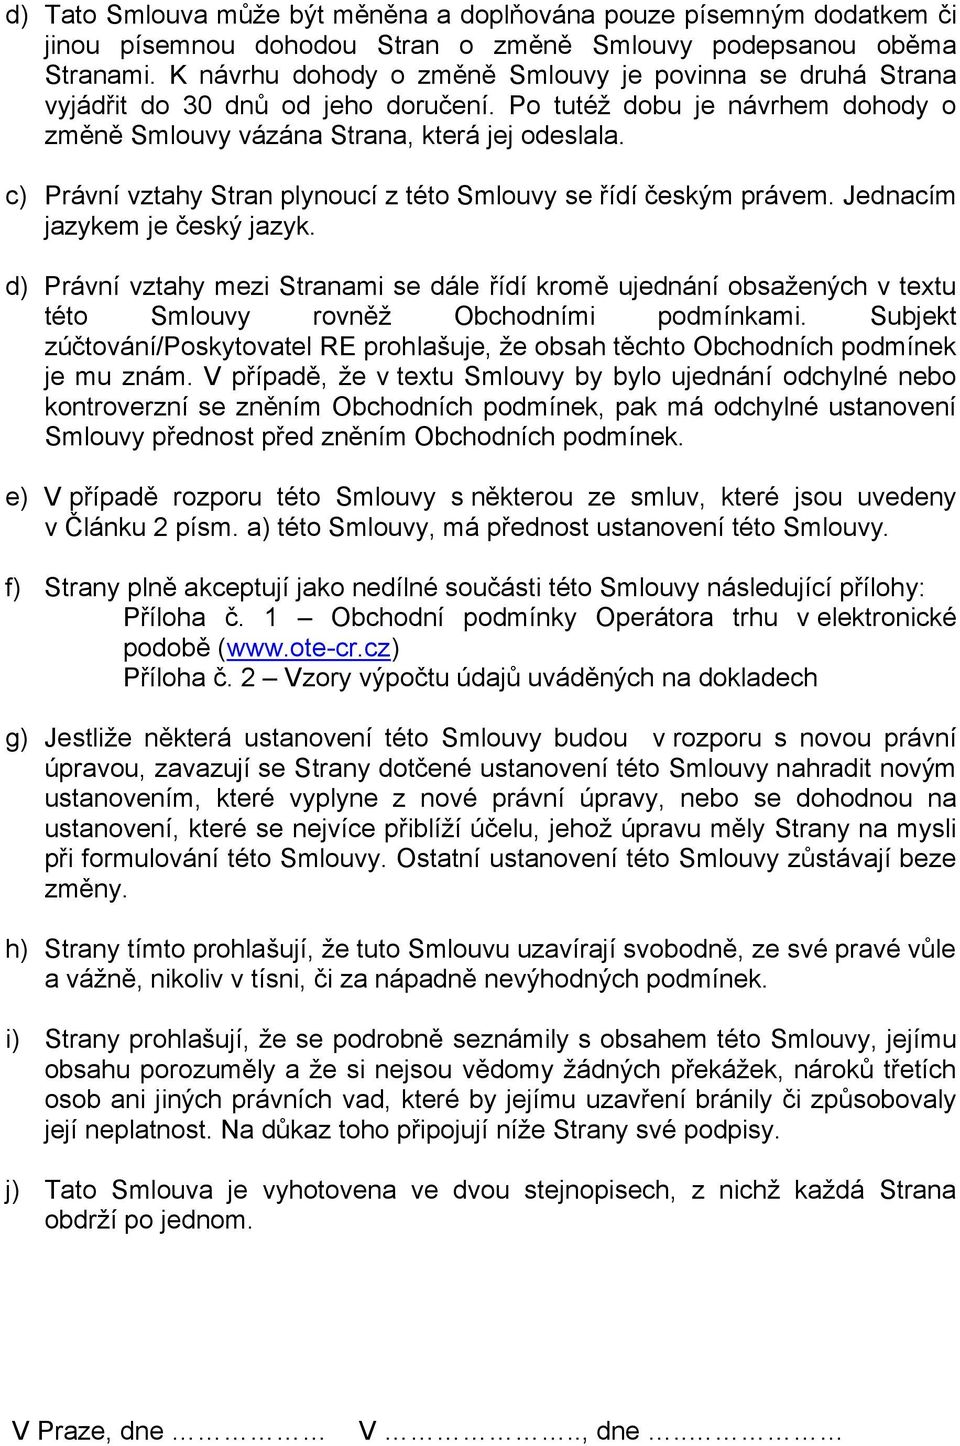 c) Právní vztahy Stran plynoucí z této Smlouvy se řídí českým právem. Jednacím jazykem je český jazyk.